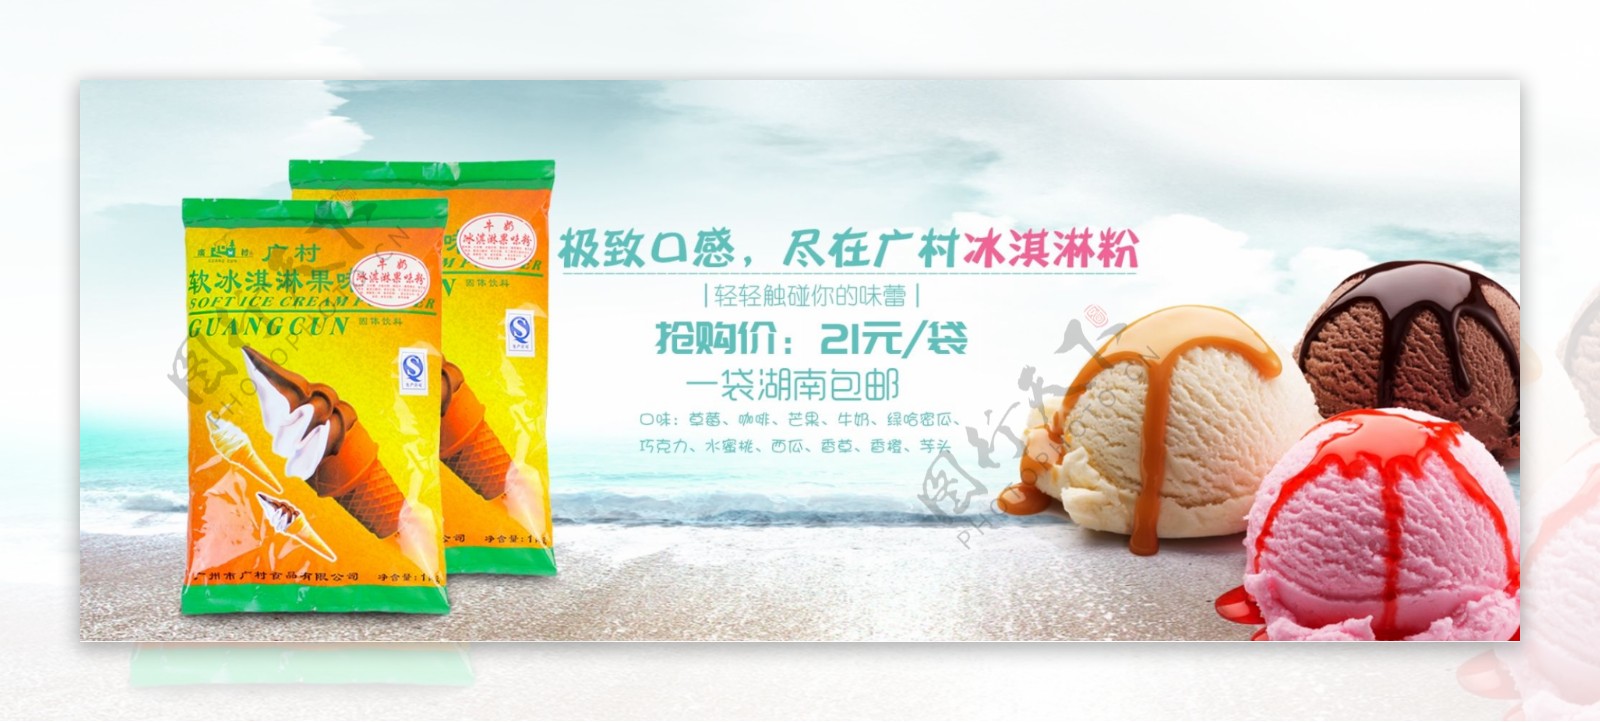 冰淇淋商品食品广告图banner